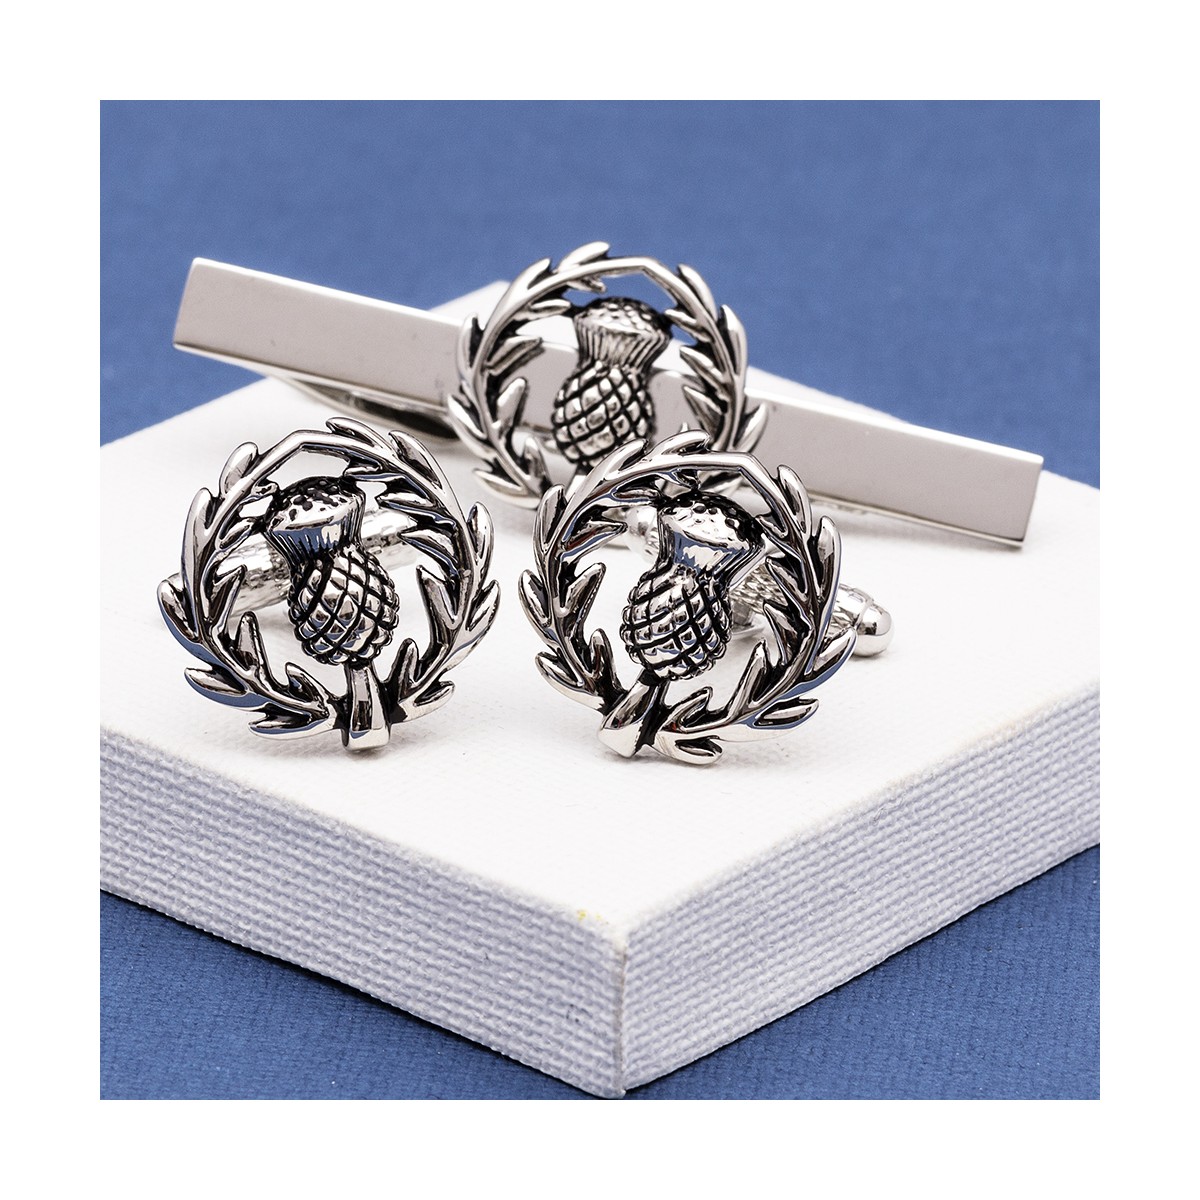 Thistle Cufflinks Gift Set | Scottish Thistle Cufflinks and Tie Clip Set